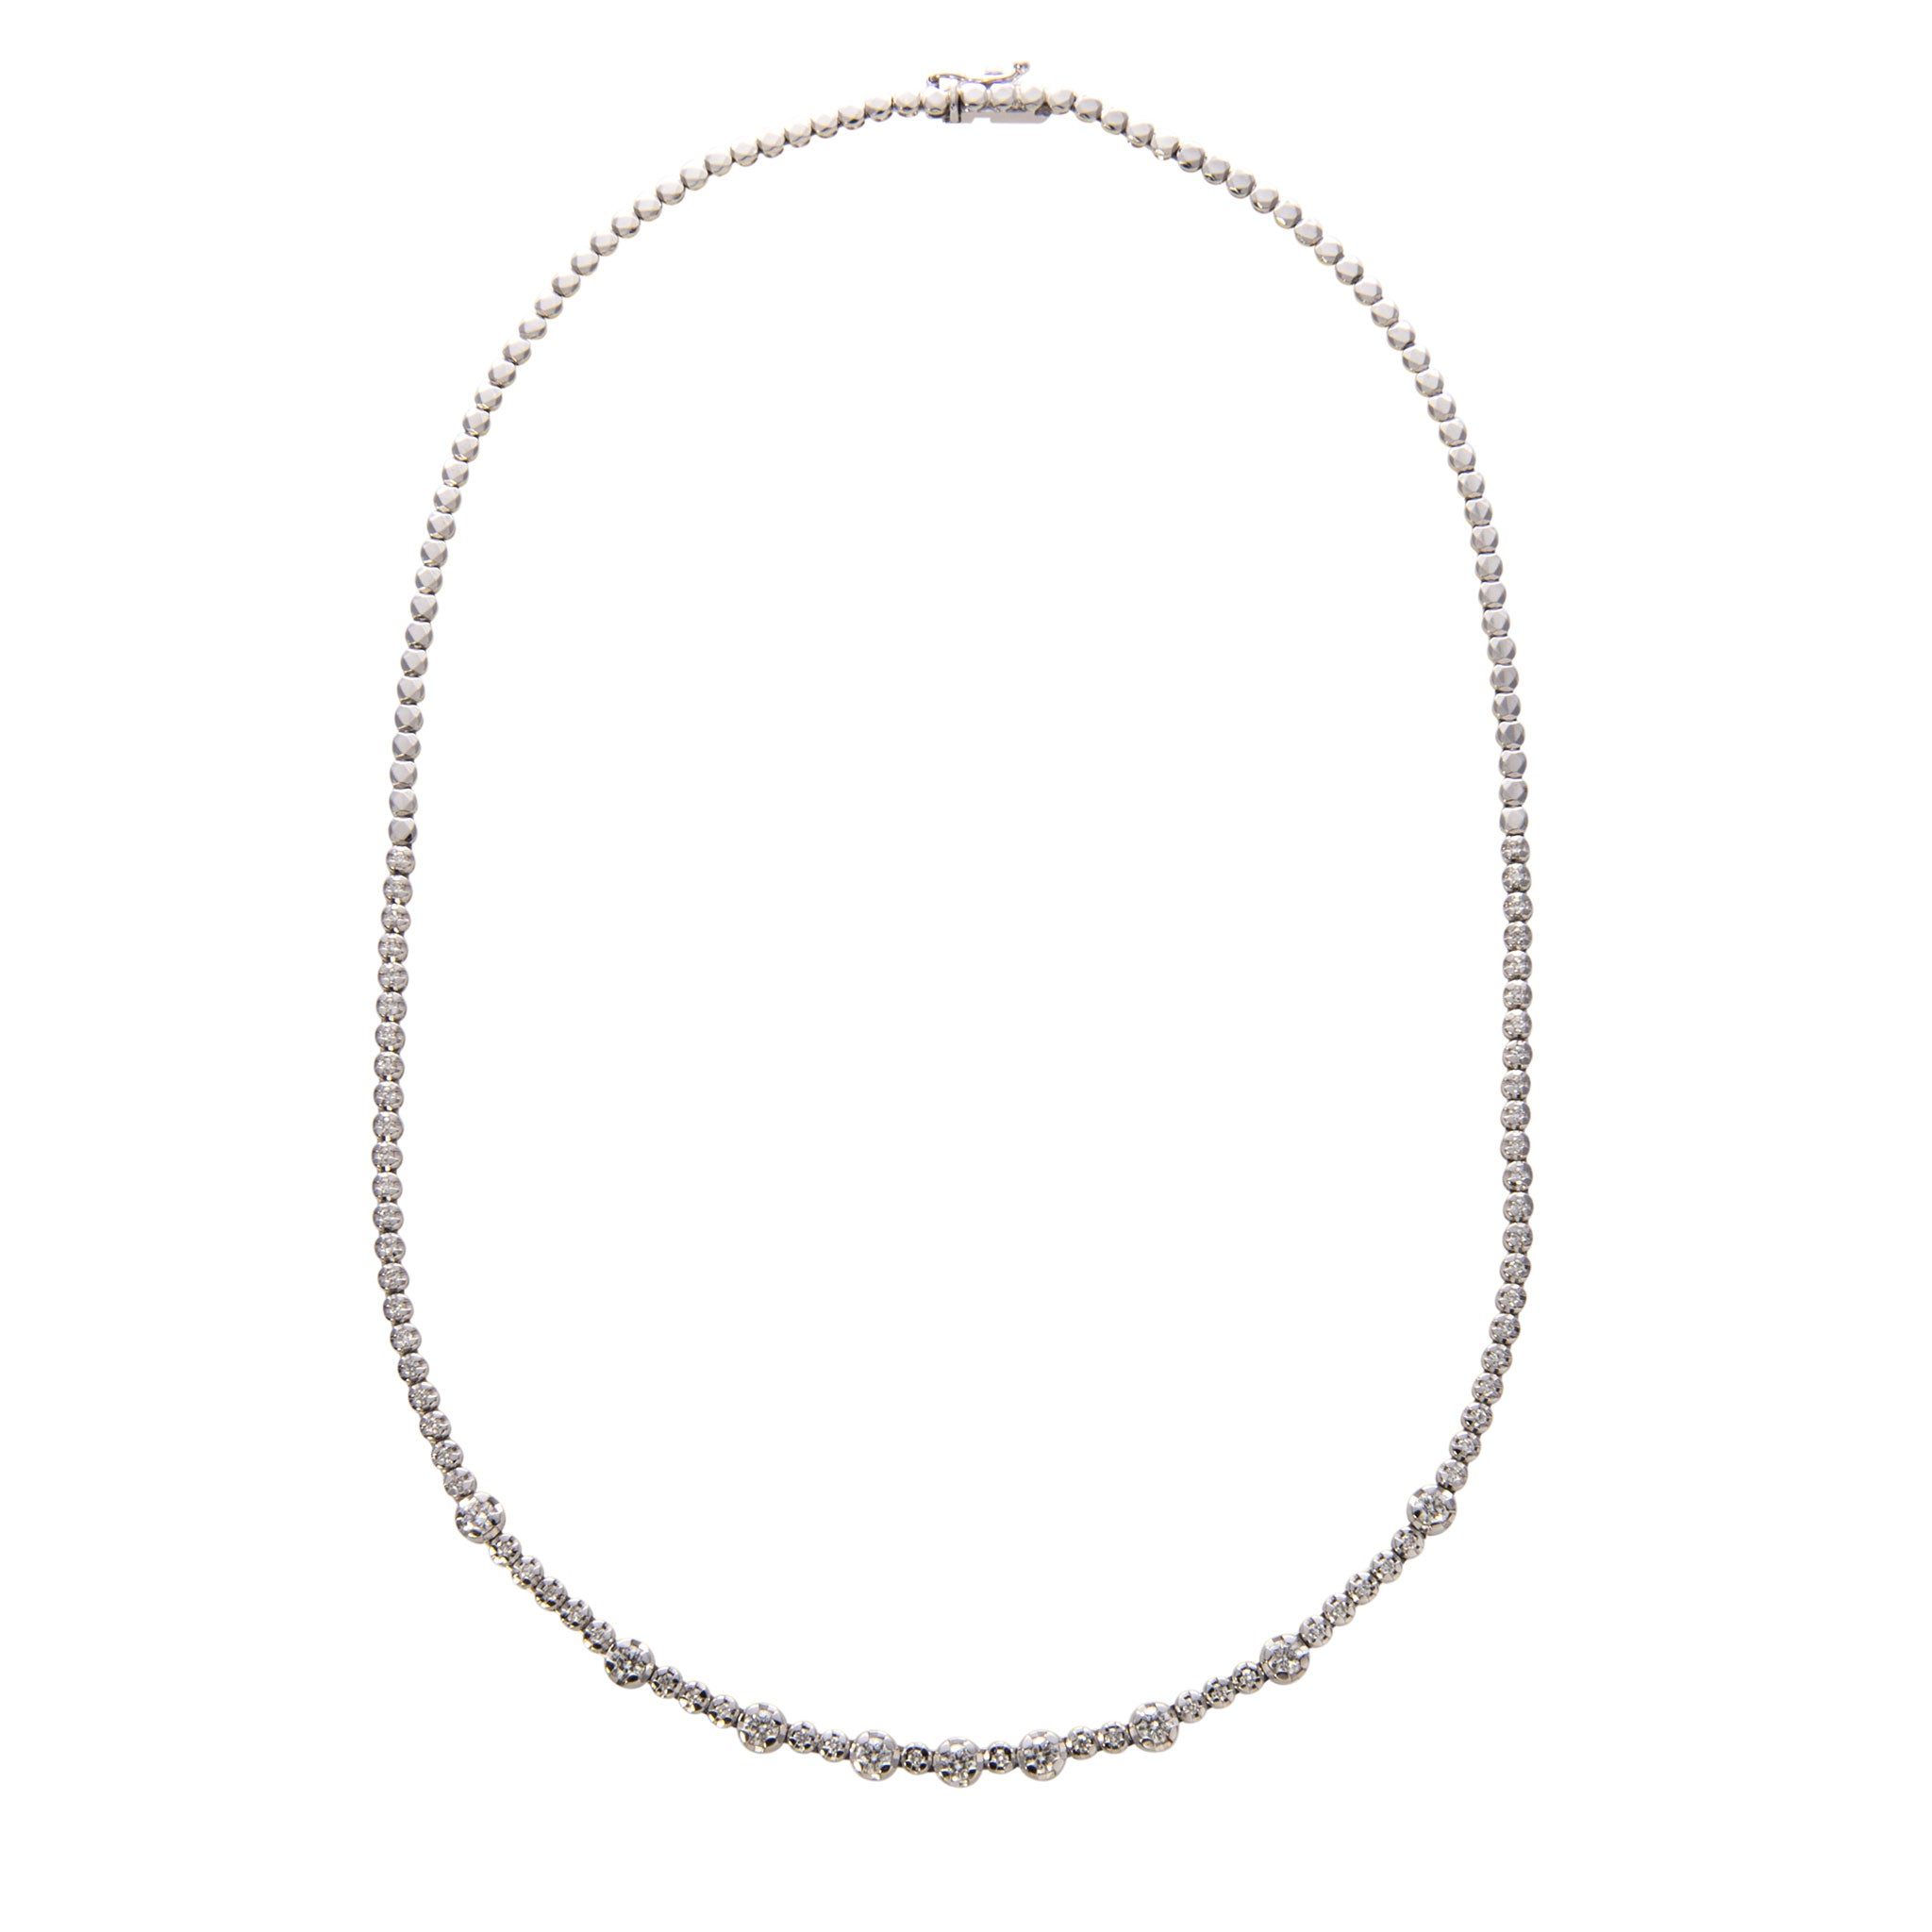 Diamond Frontal 14K White Gold Tennis Necklace